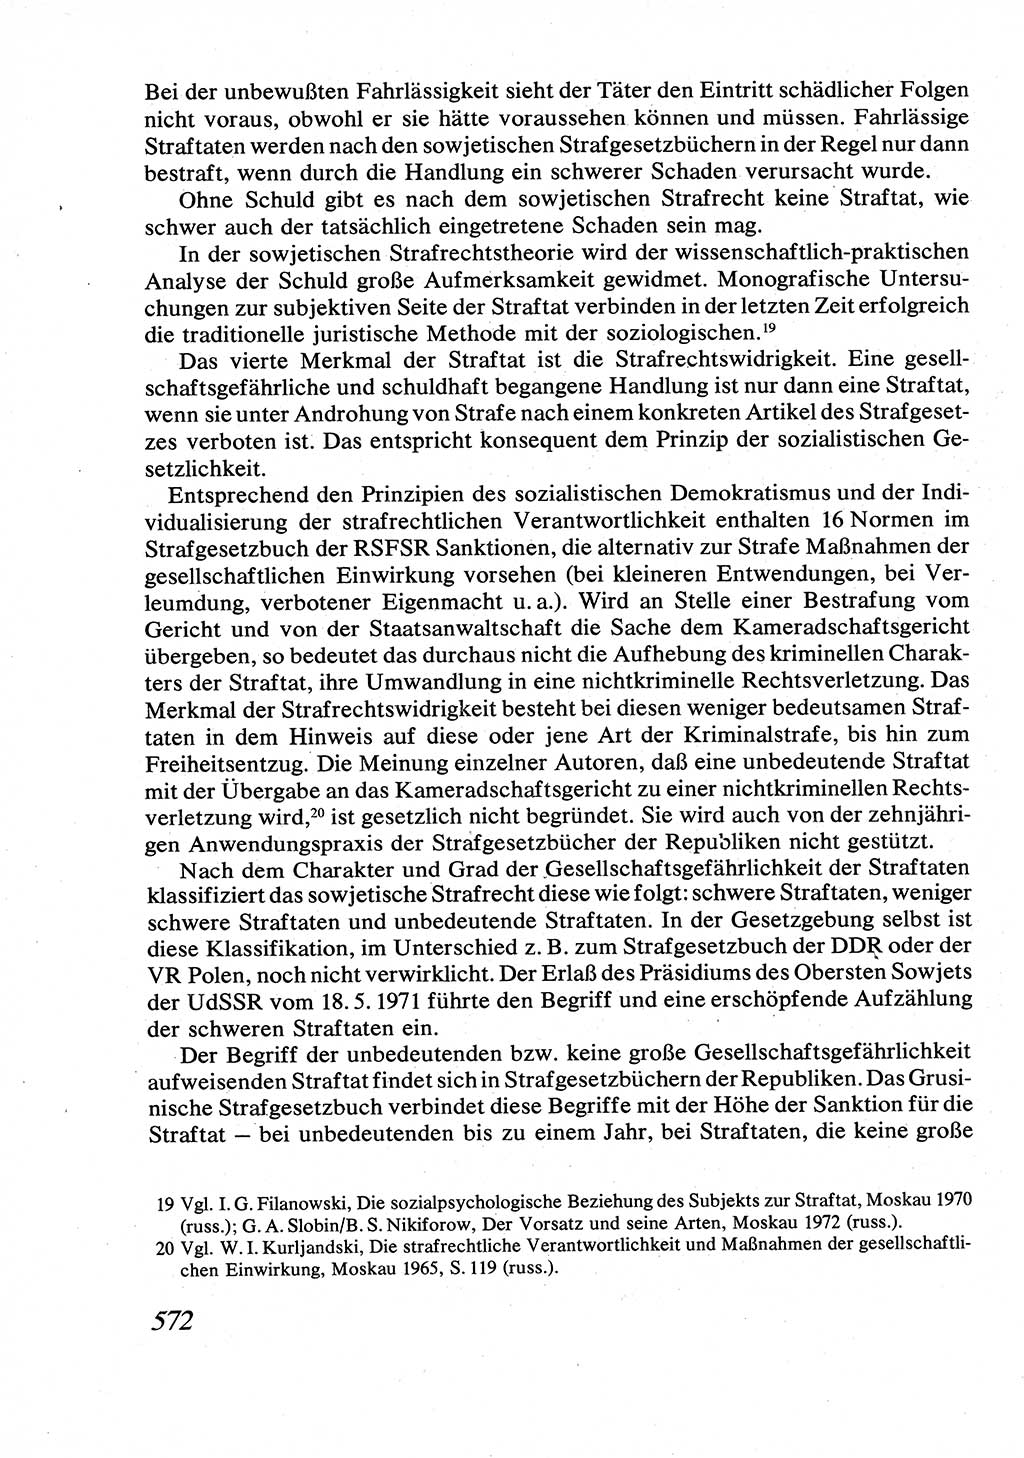 Strafrecht [Deutsche Demokratische Republik (DDR)], Allgemeiner Teil, Lehrbuch 1976, Seite 572 (Strafr. DDR AT Lb. 1976, S. 572)